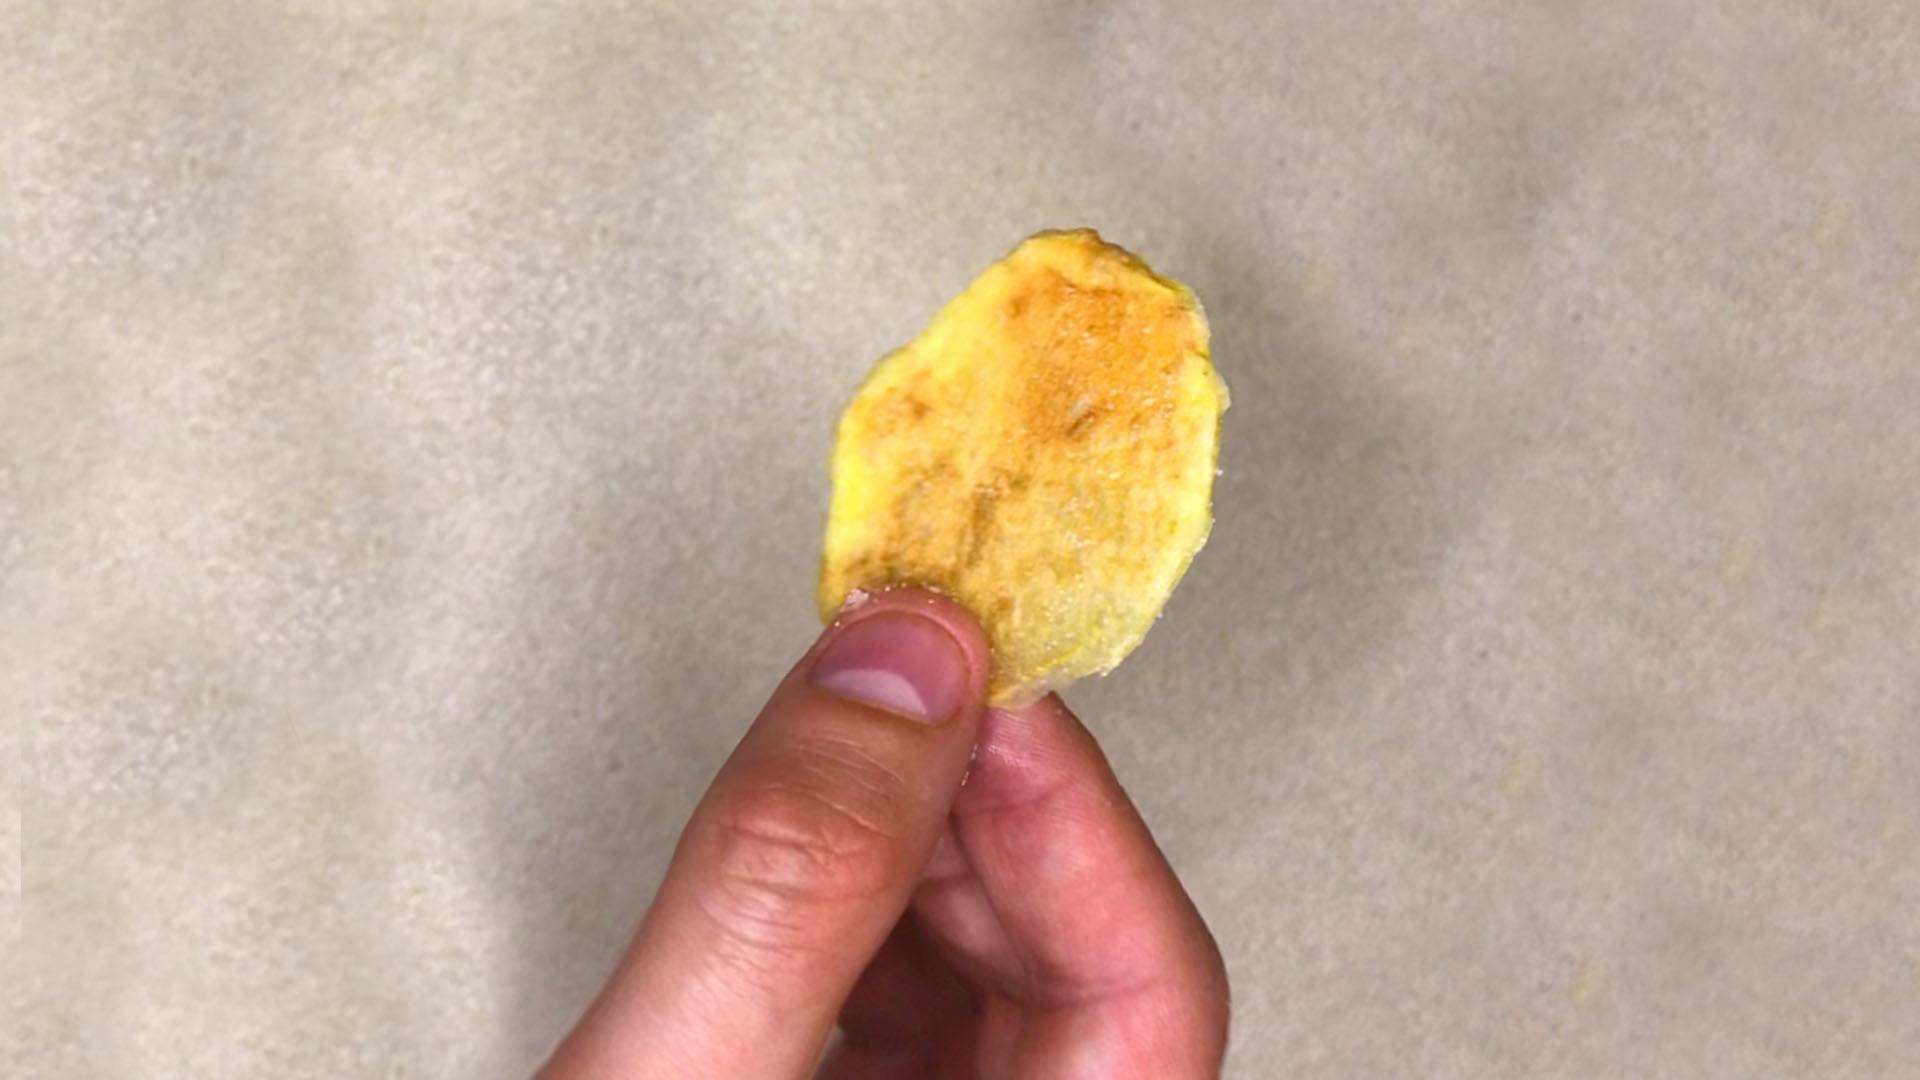 Házi chips (sült krumpli) mikróban - Mikrós sült krumpli csipsz 10 perc alatt című cikk borítóképe